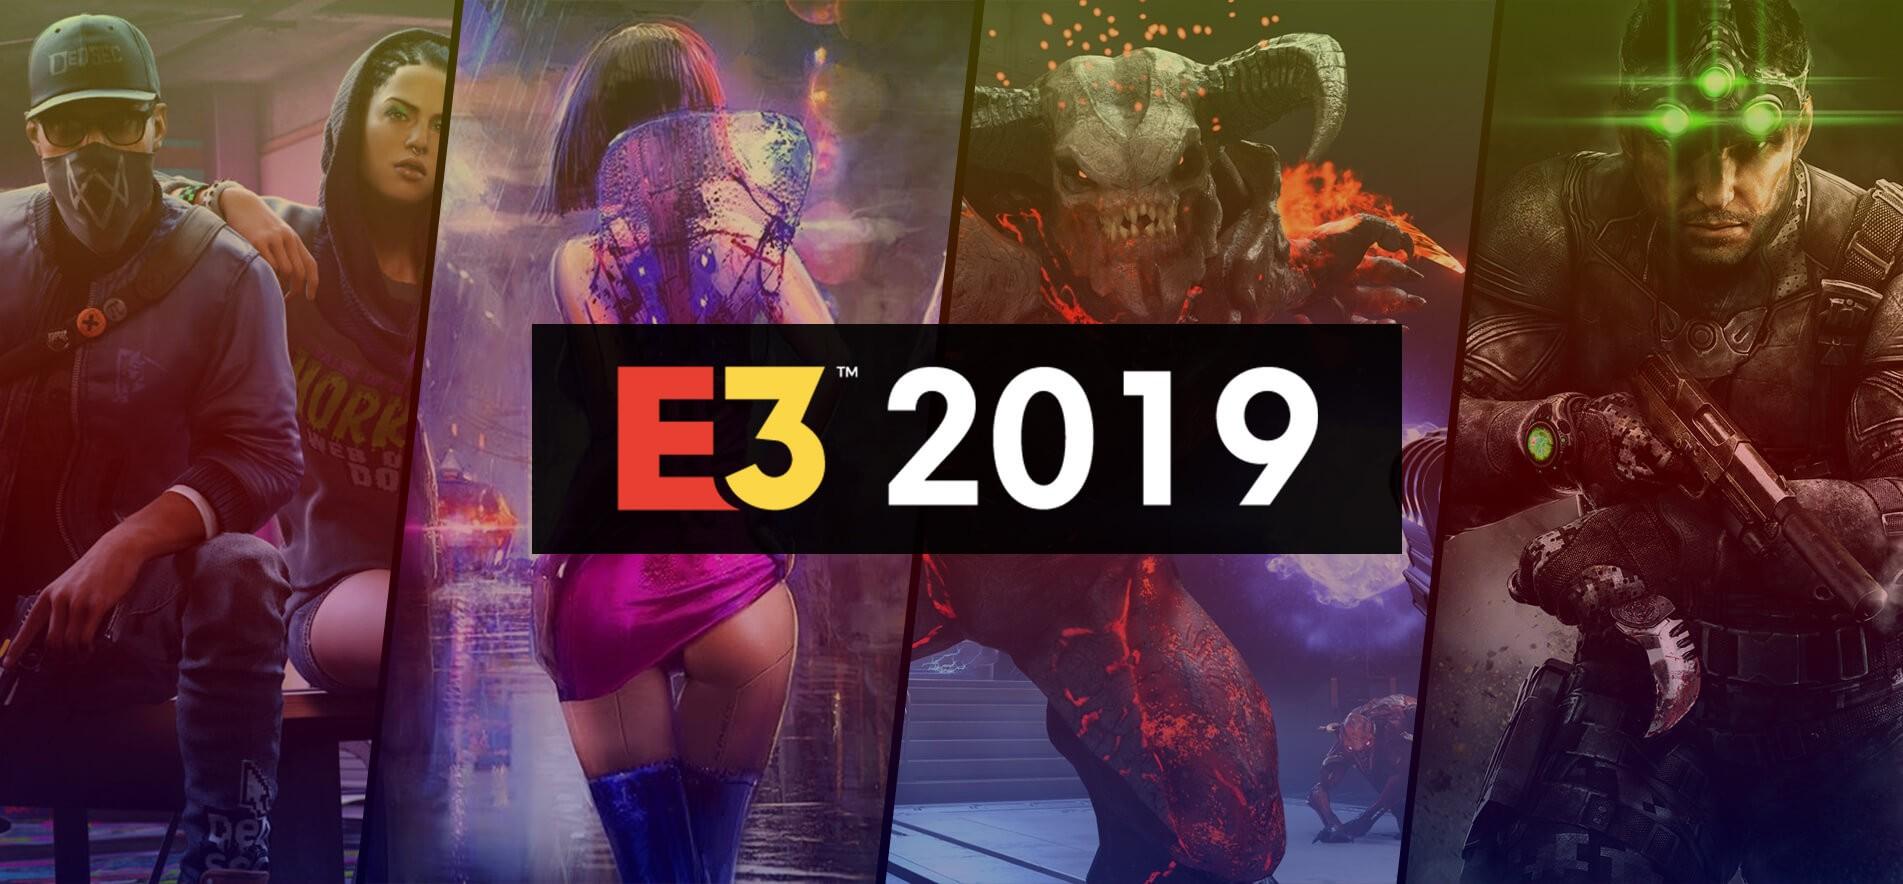 Самые ожидаемые игры E3 2019